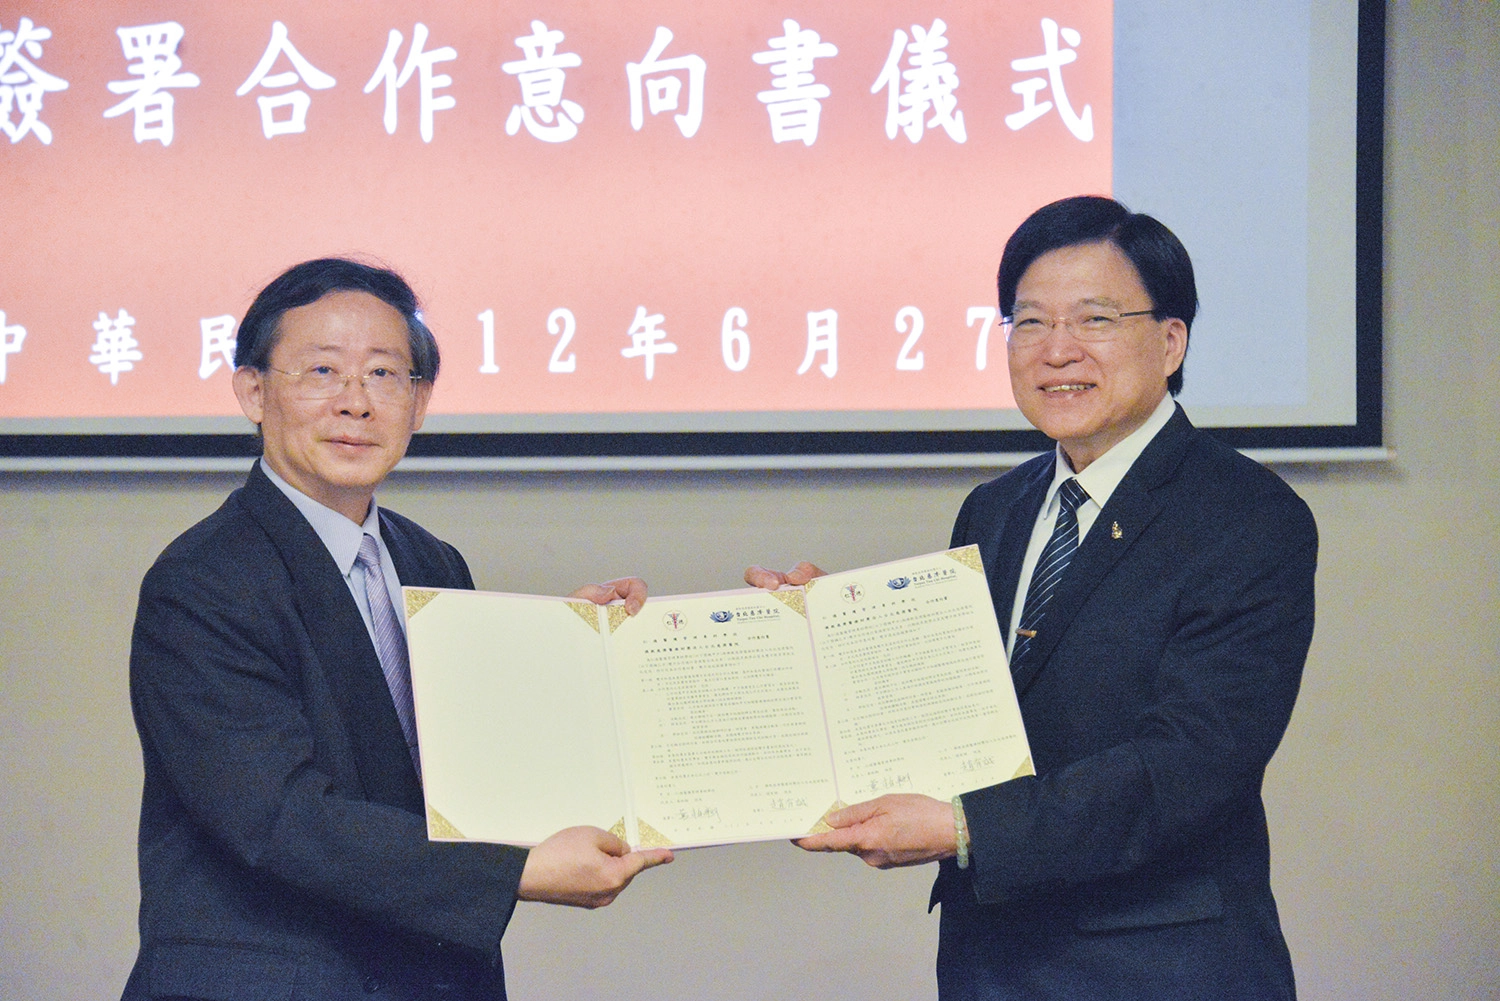 台北慈濟醫院趙有誠院長(右)、仁德醫護管理專科學校黃柏翔校長(左)正式簽署合作意向書。